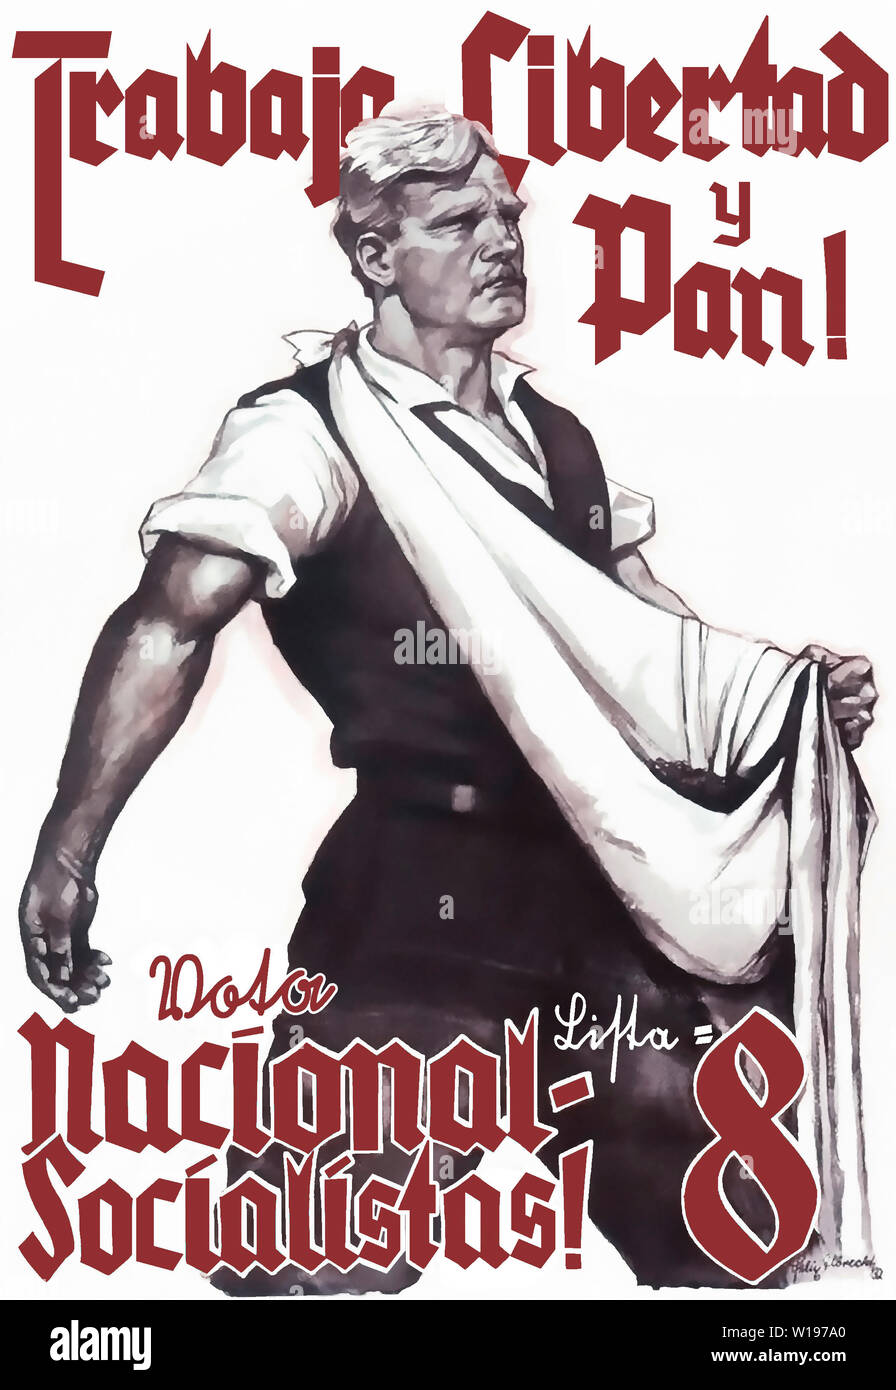 Arbeit, Freiheit und Brot! Wählt Liste 8 National-Sozialisten! (Tradotto in spagnolo) Foto Stock